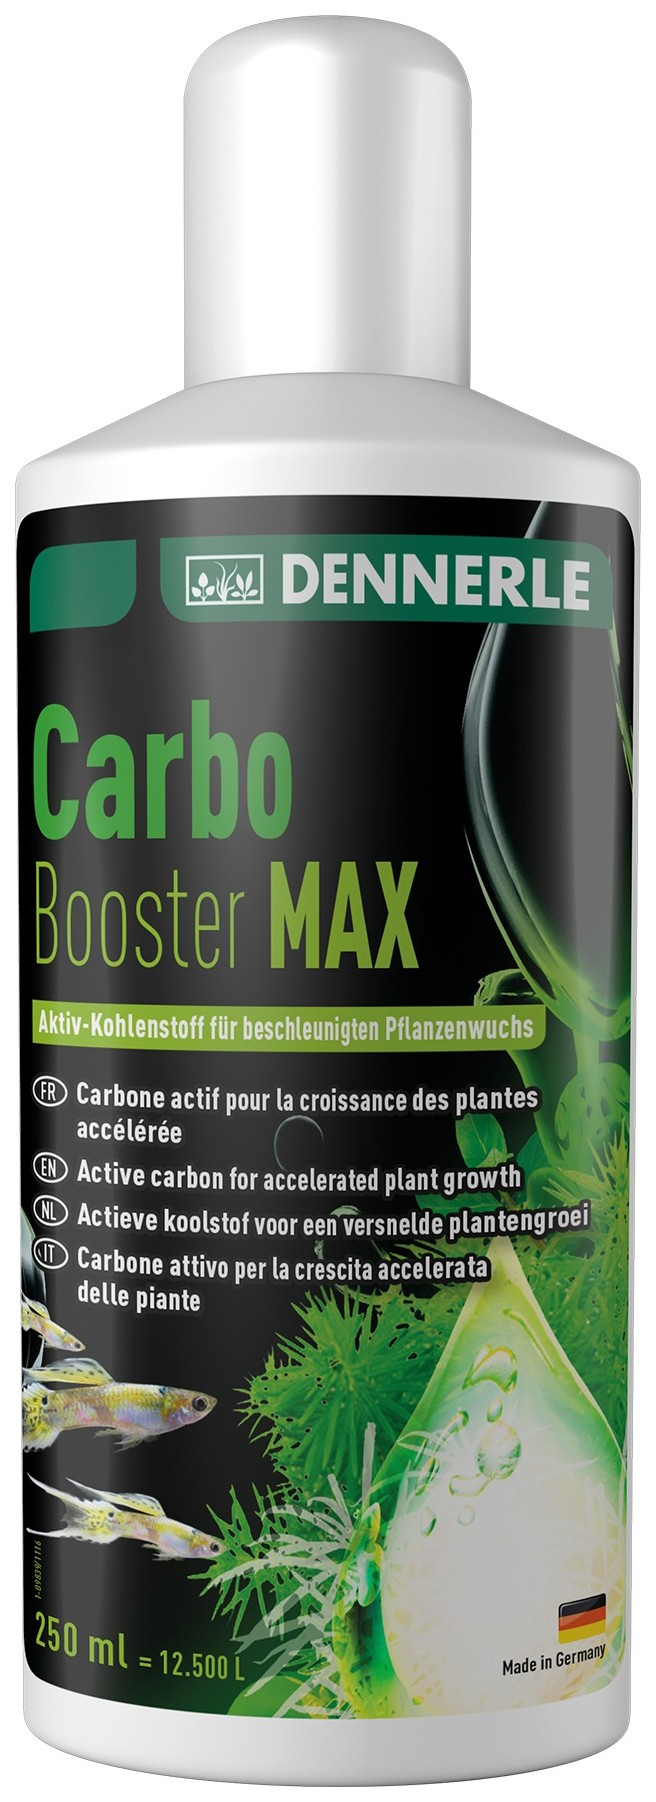 Dennerle Carbo Booster Max Carbone liquido per le piante